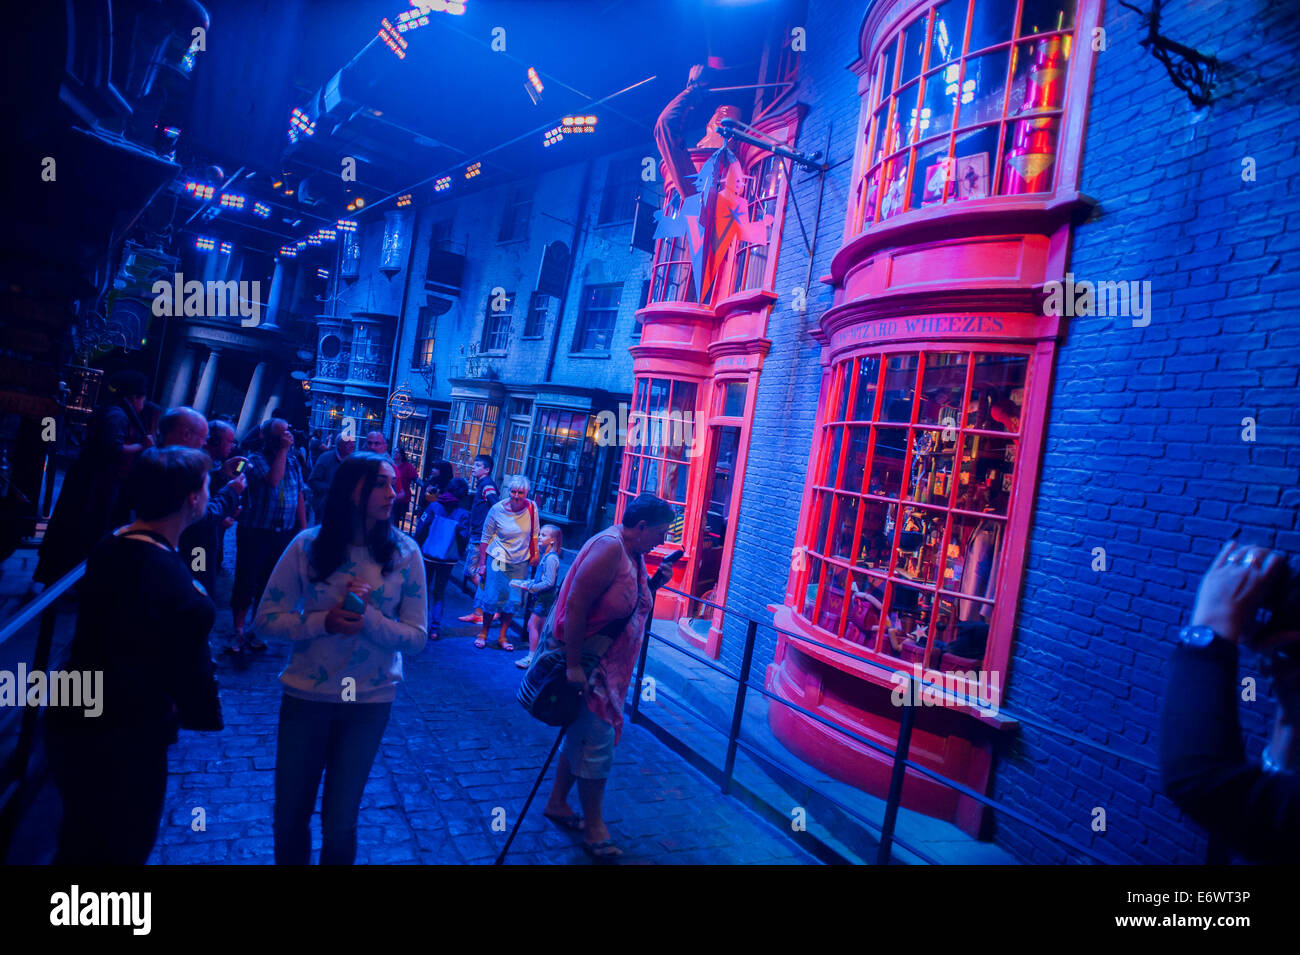 Warner Bros Studio Tour London - The Making of Harry Potter préserve et met en valeur l'emblématique accessoires. Banque D'Images